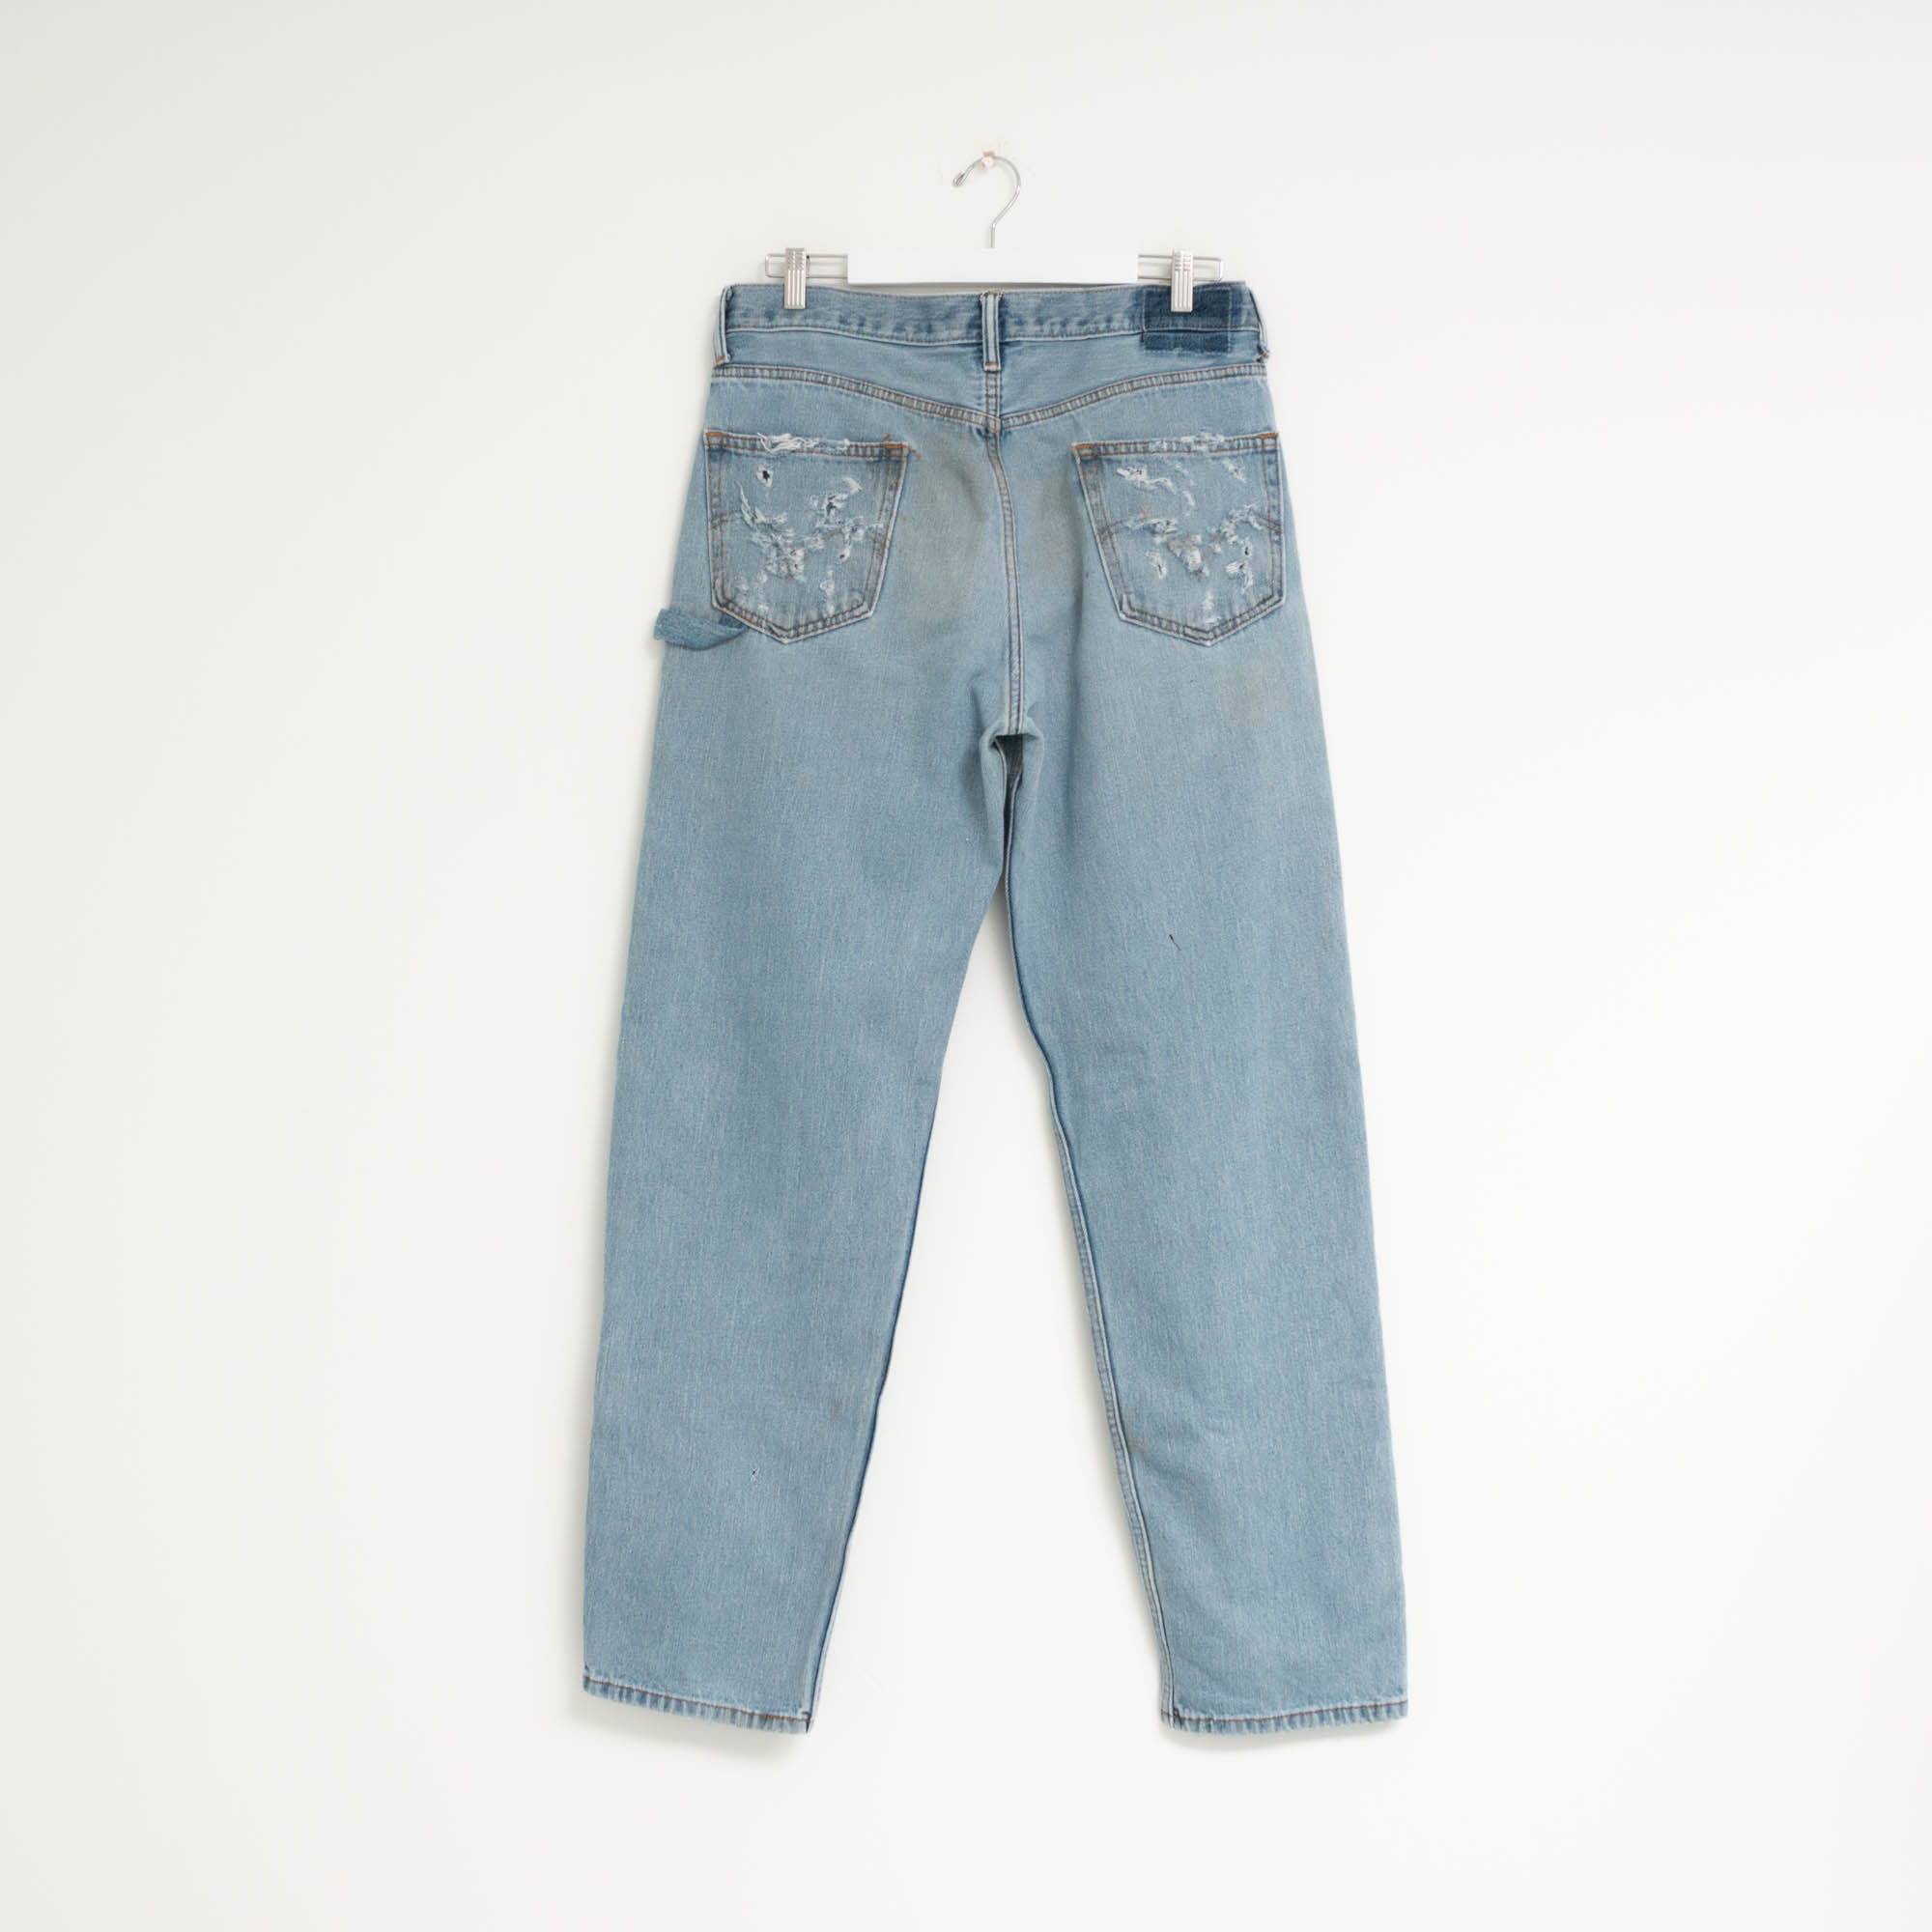 "CARPENTER" Jeans W36 L34